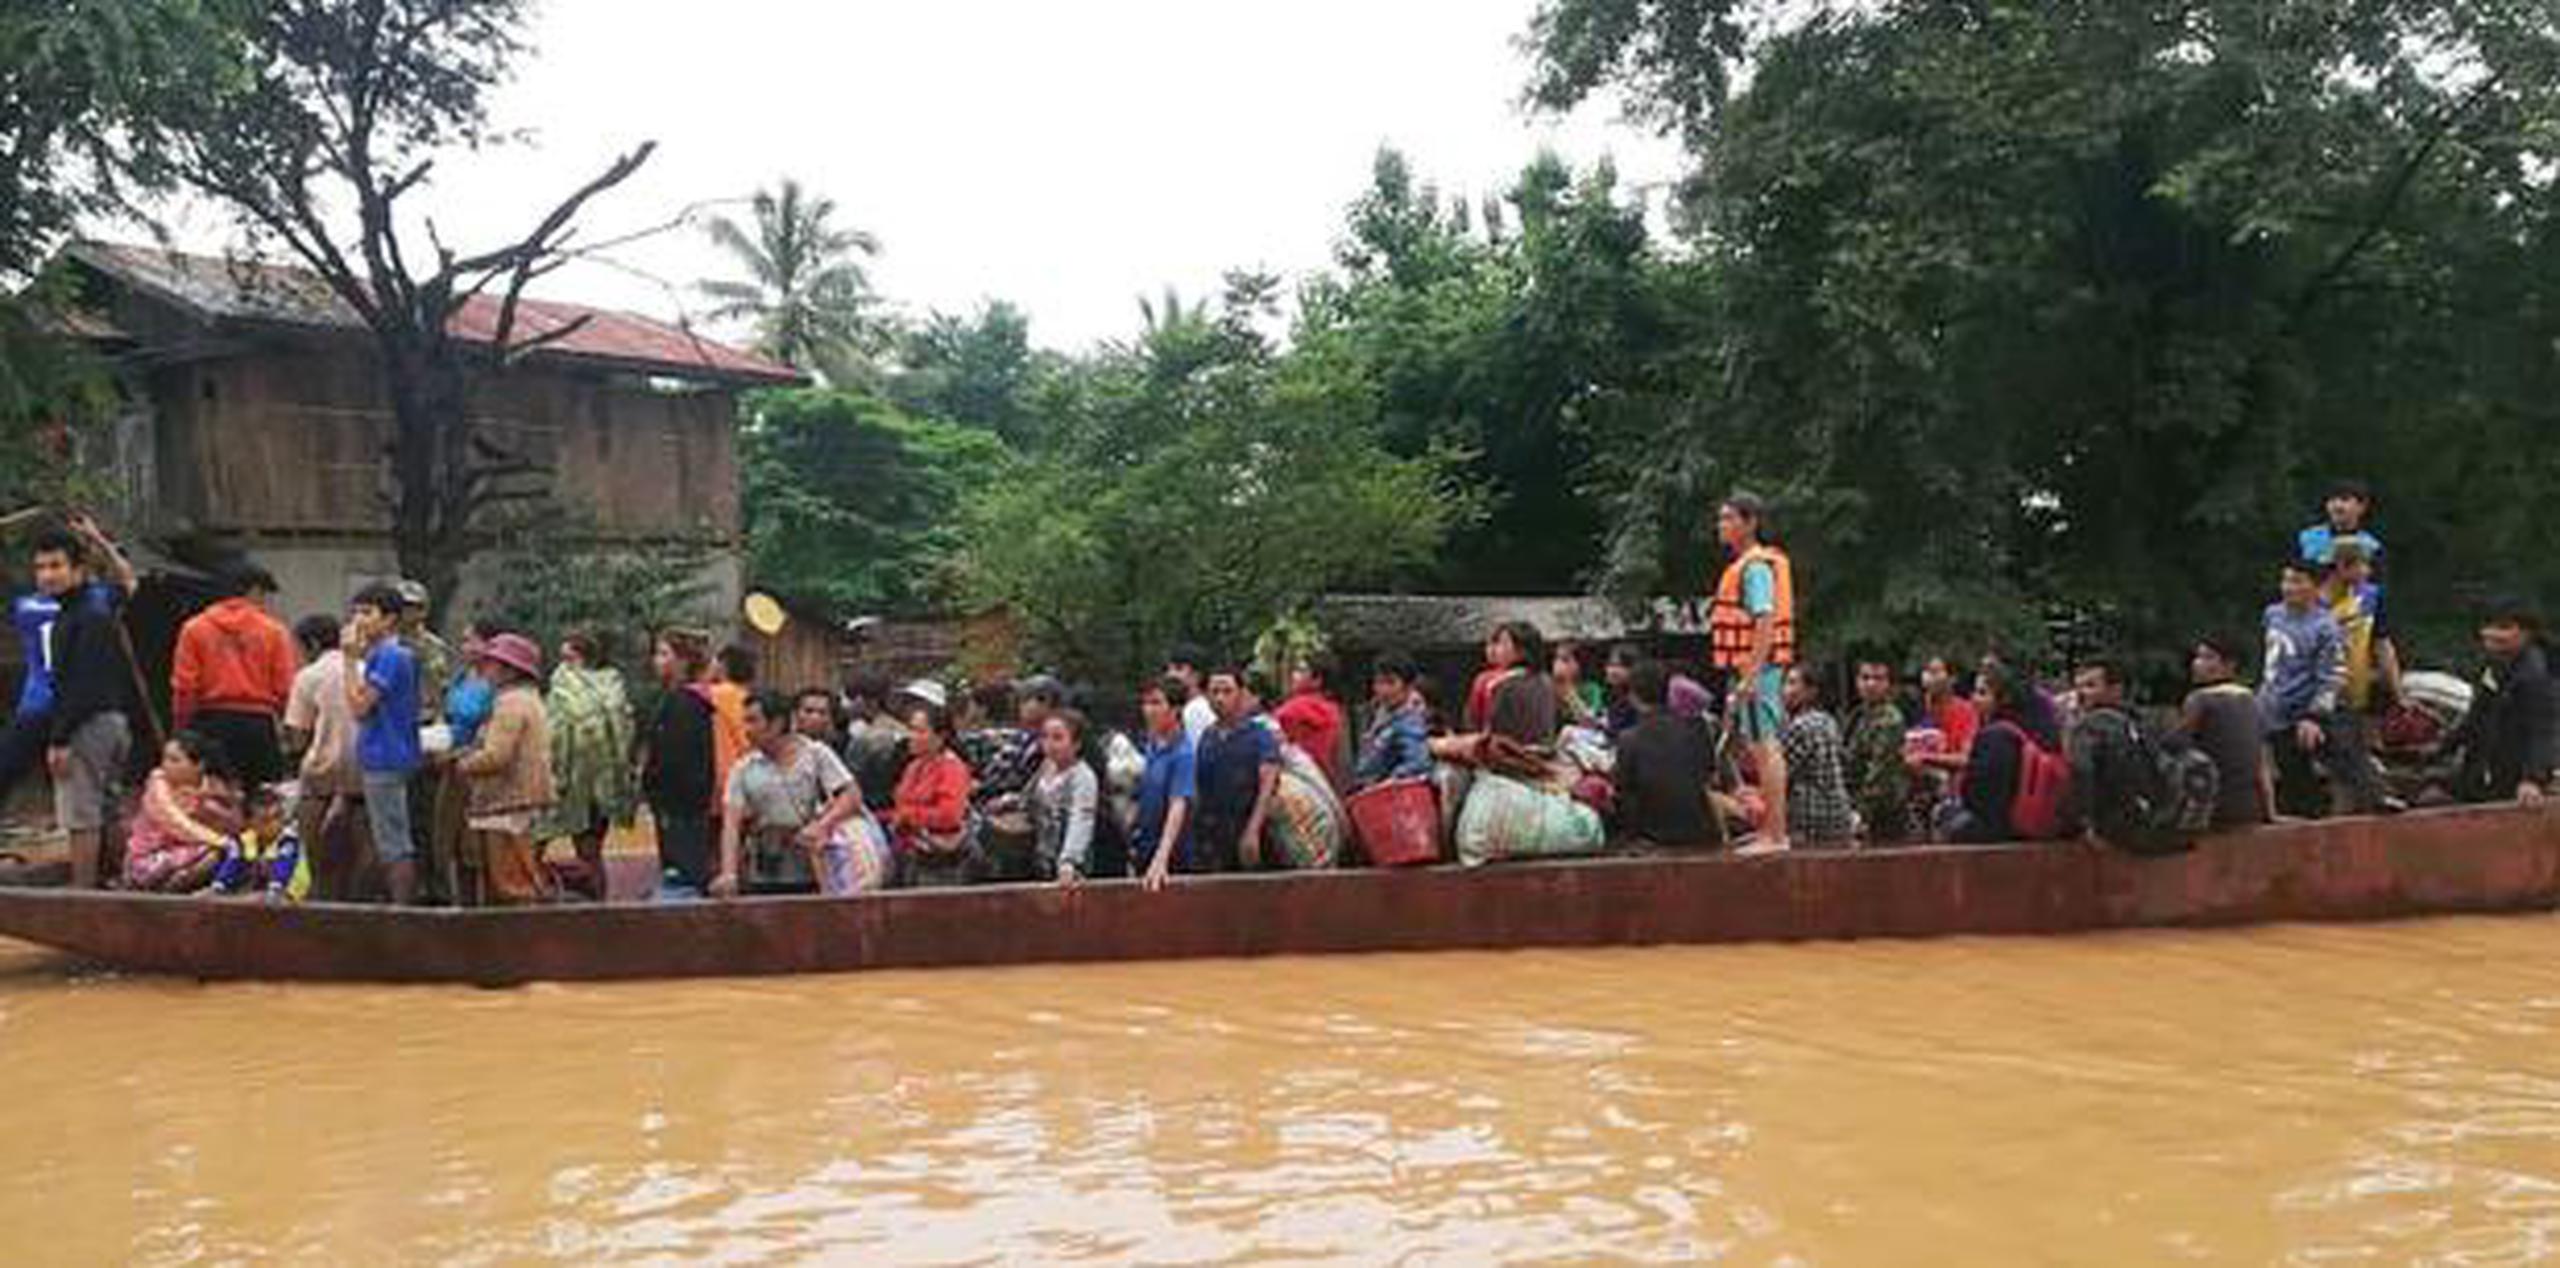 Fotos y vídeos publicados en redes sociales mostraron a los residentes sentados en los tejados para huir de la crecida, mientras otros eran rescatados en barco. (EFE / ABC Laos News)